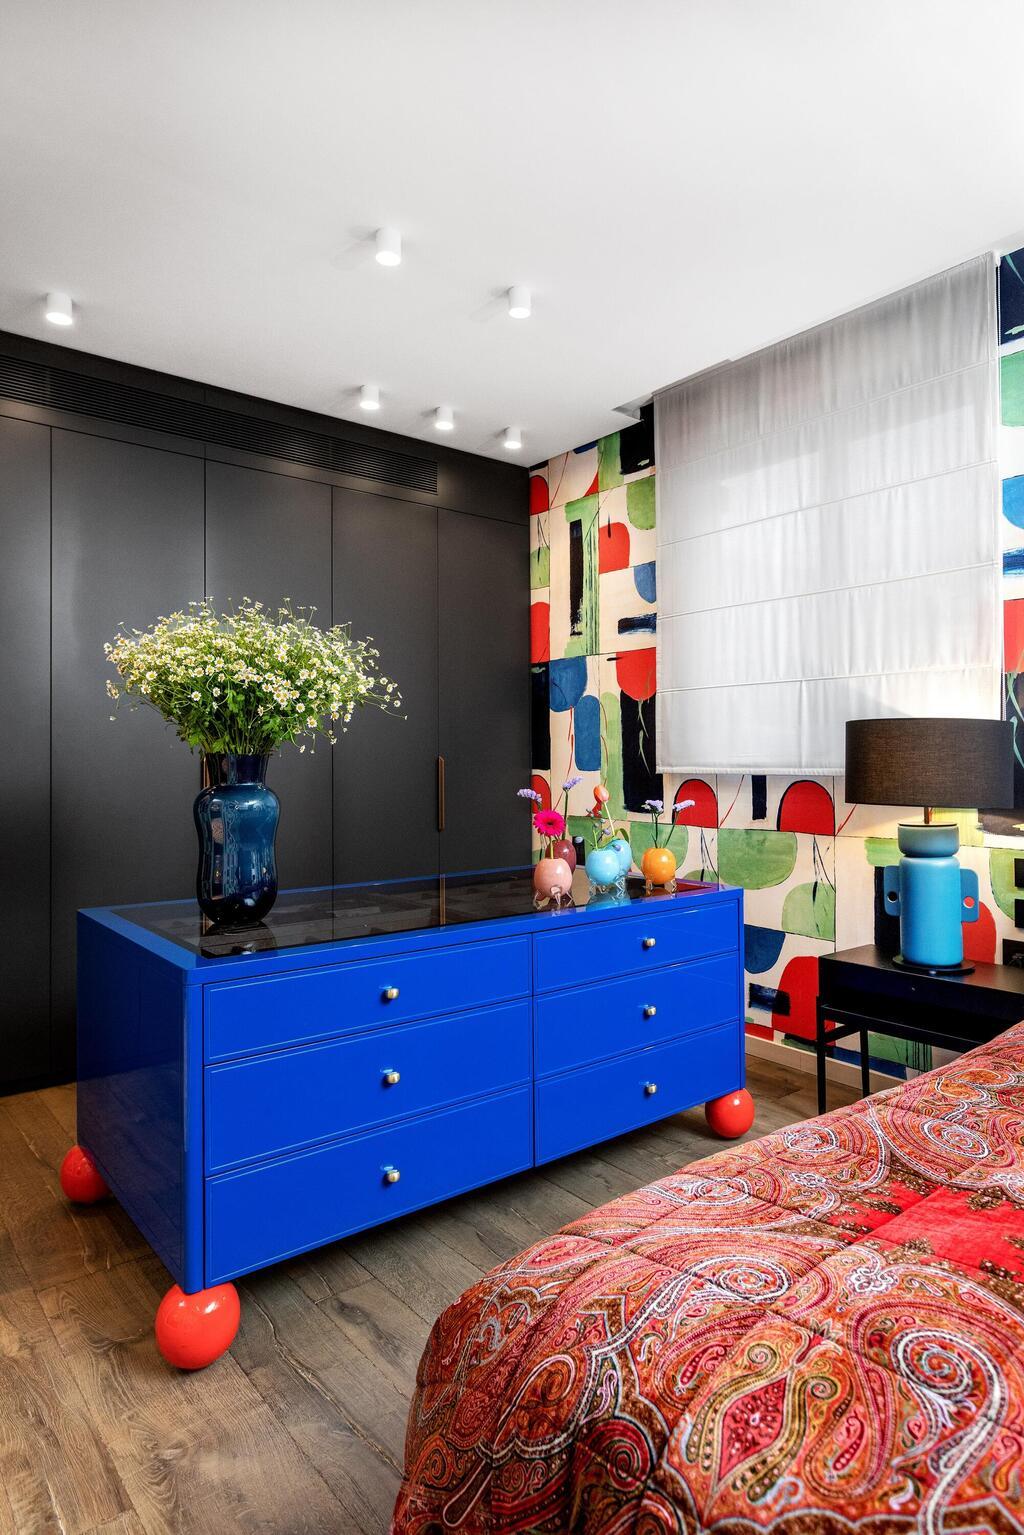 דירה צבעונית לזוג רופאים, עיצוב גילי אונגר